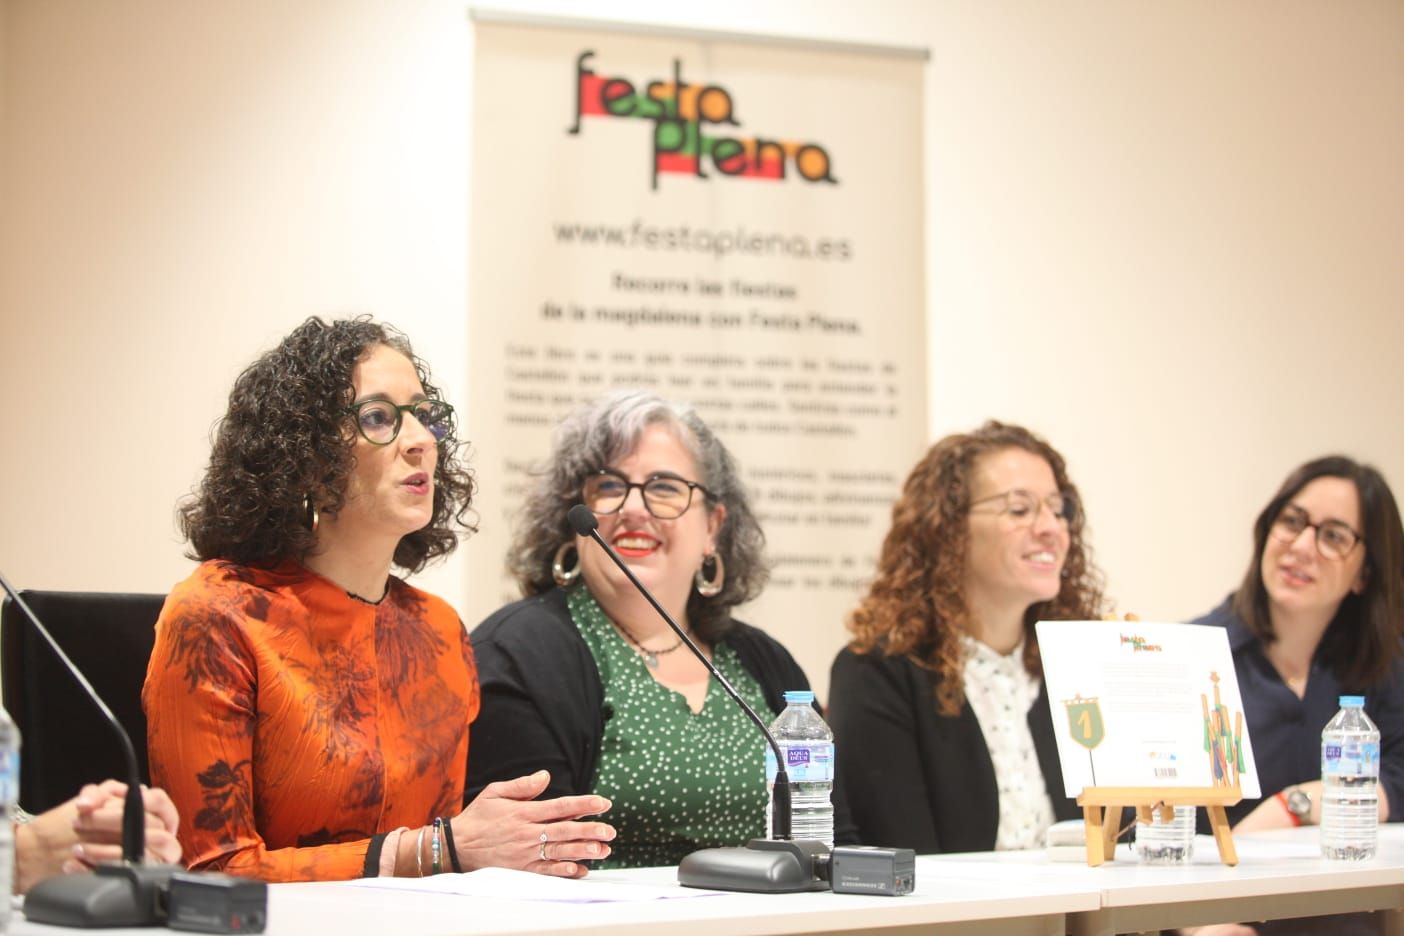 Las mejores imágenes de la presentación del libro Festa Plena de Almudena Sánchez